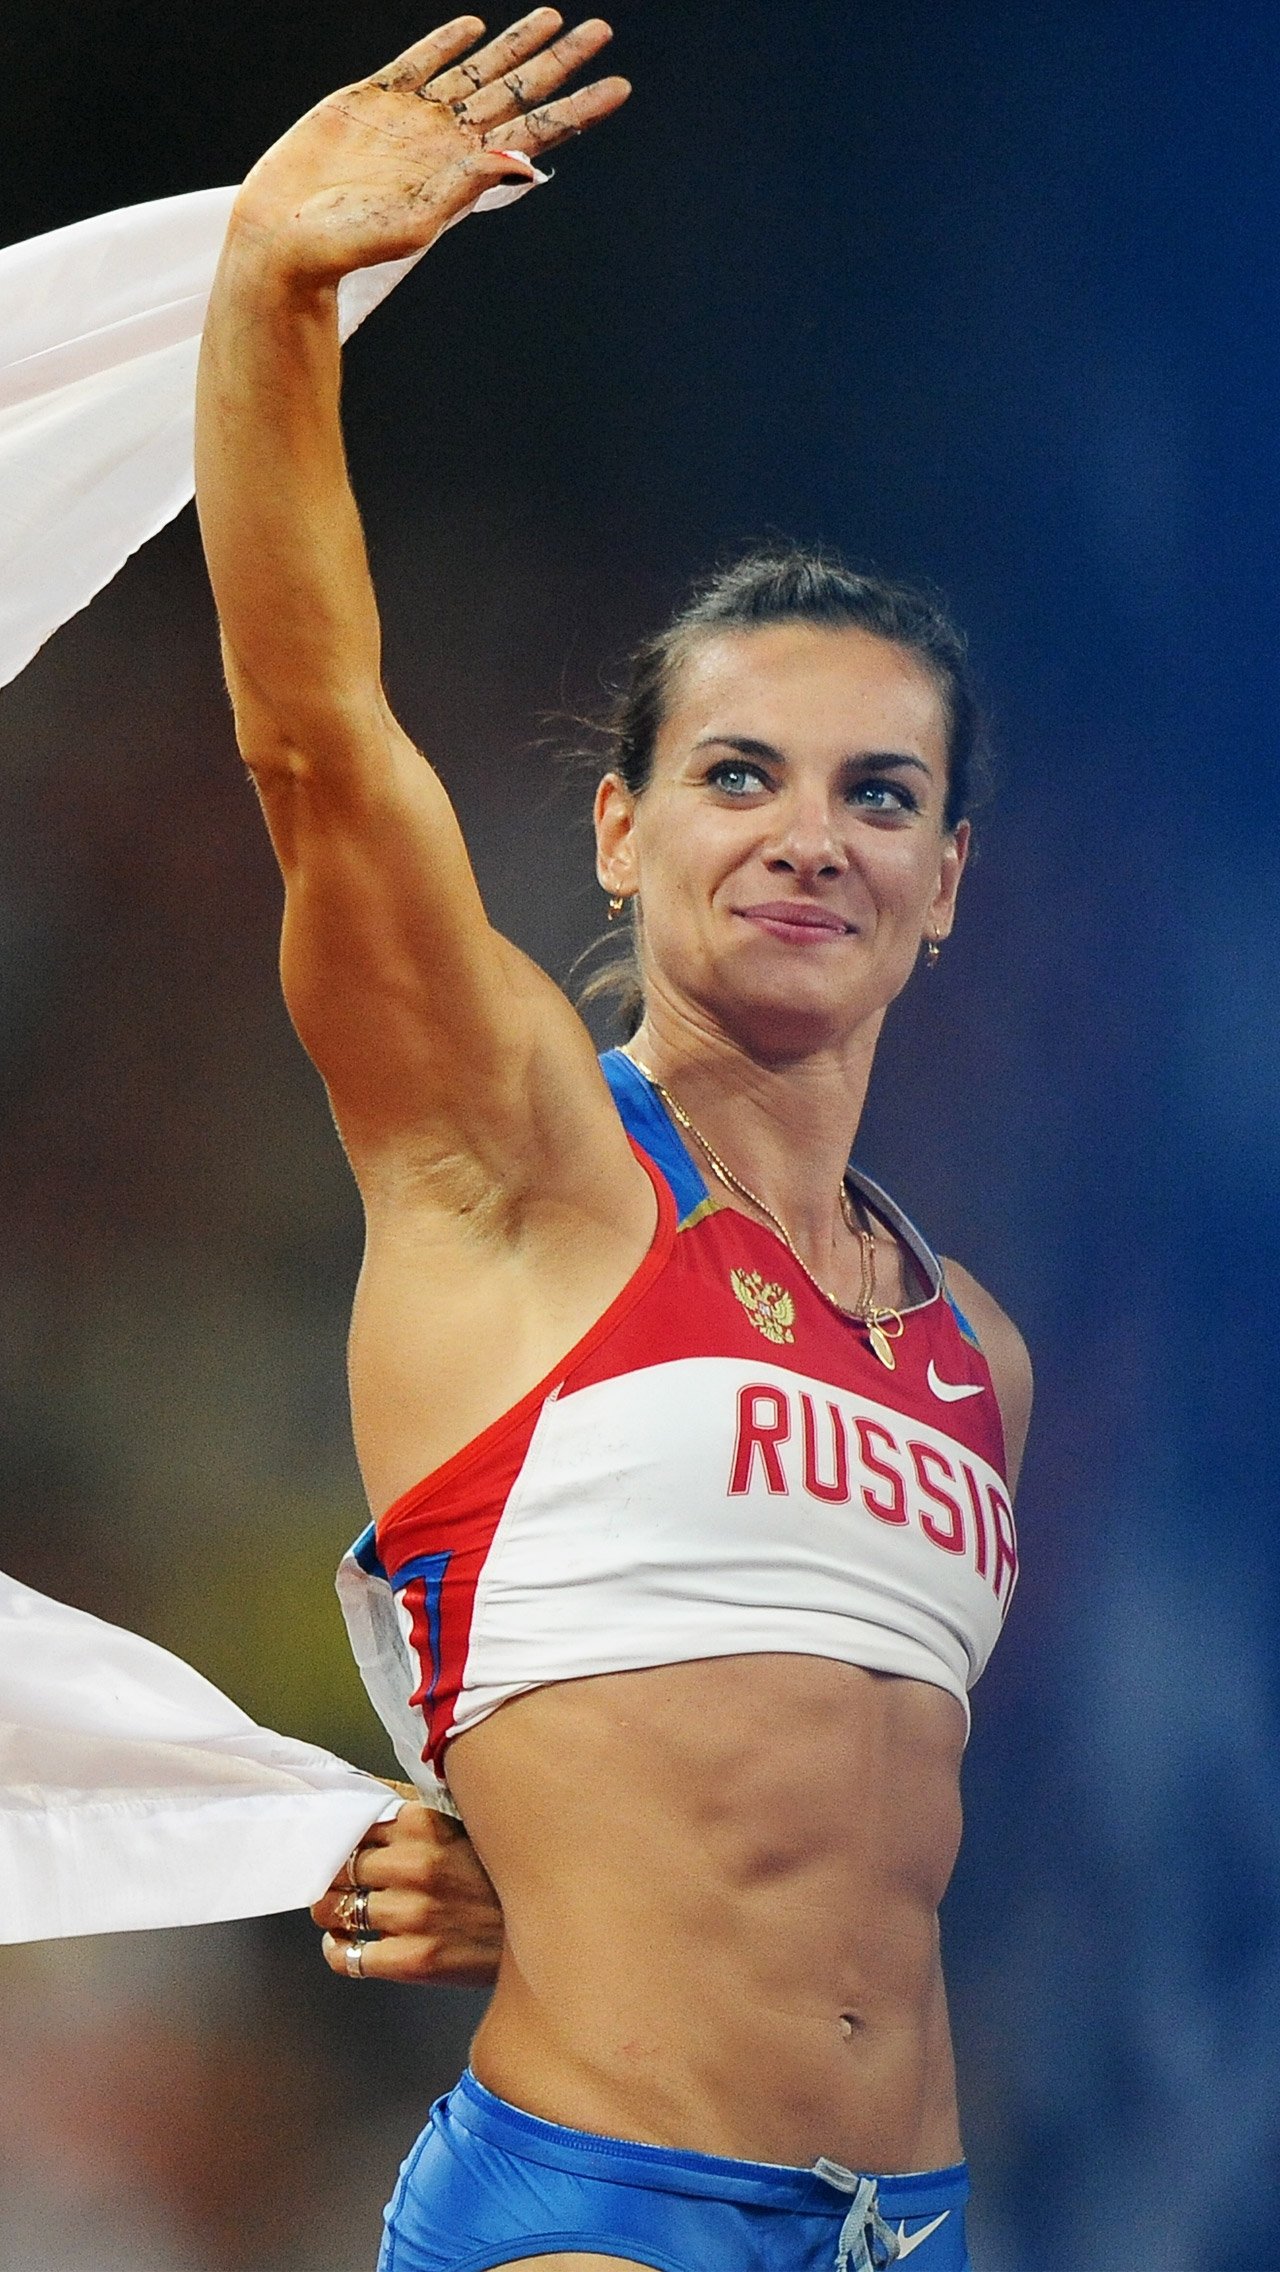 Елена Исинбаева – одна из самых известных российских легкоатлеток. За годы своей карьеры она выиграла две Олимпиады и установила множество мировых рекордов.